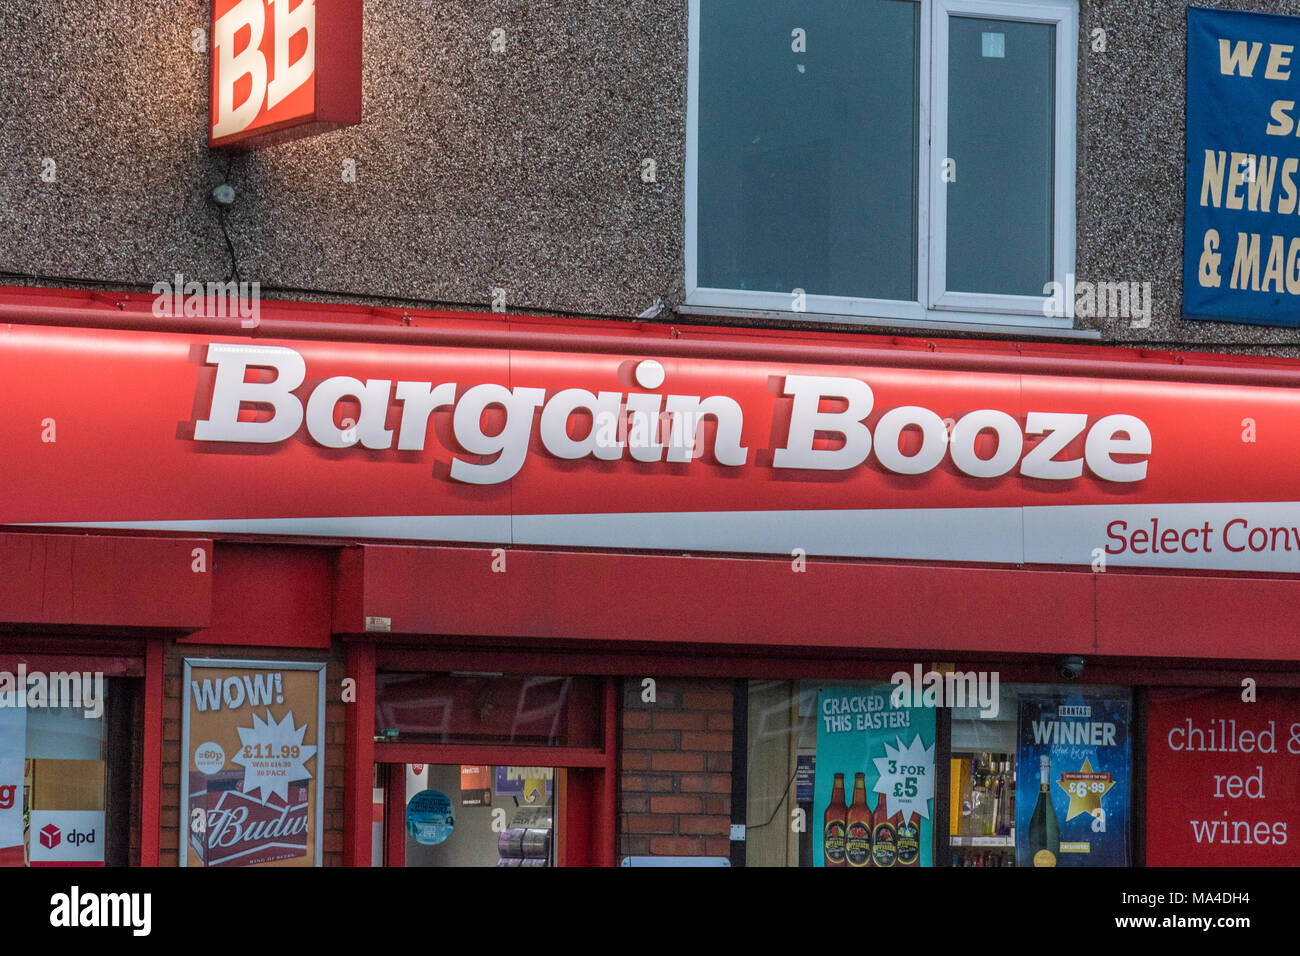 Bargain Booze shop entre dans l'entreprise l'administration de la faillite La faillite de l'employé du personnel des magasins des alcools alcool Boissons Boissons Boissons licence off Banque D'Images